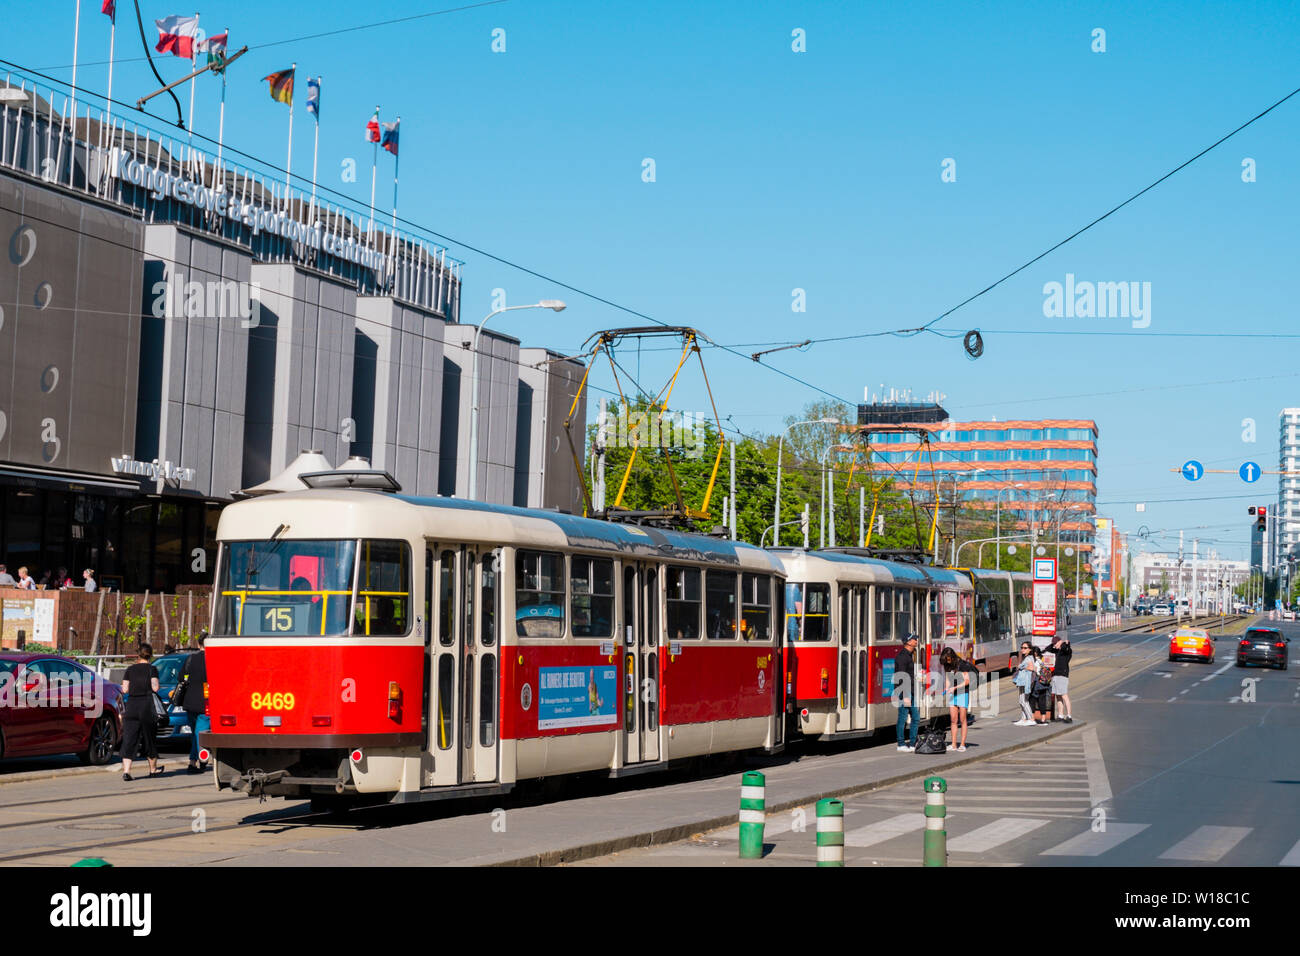 Öffentliche verkehrsmittel Straßenbahn, Olsanske Namesti, Zizkov, Prag, Tschechische Republik Stockfoto